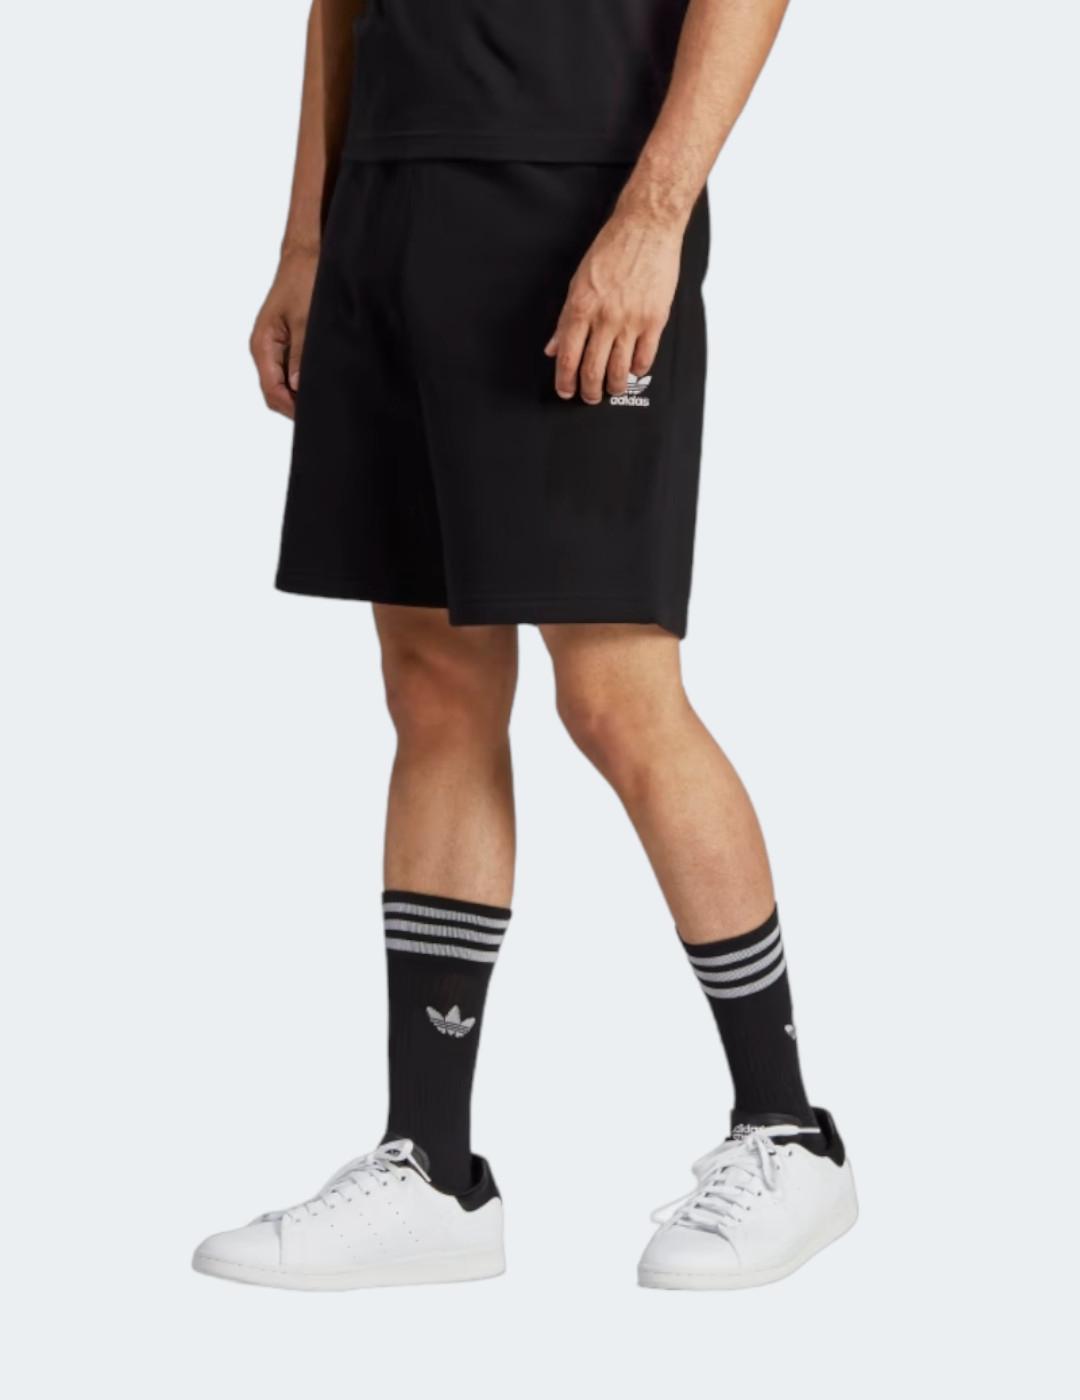 Pantalones Cortos Adidas para chico color negro